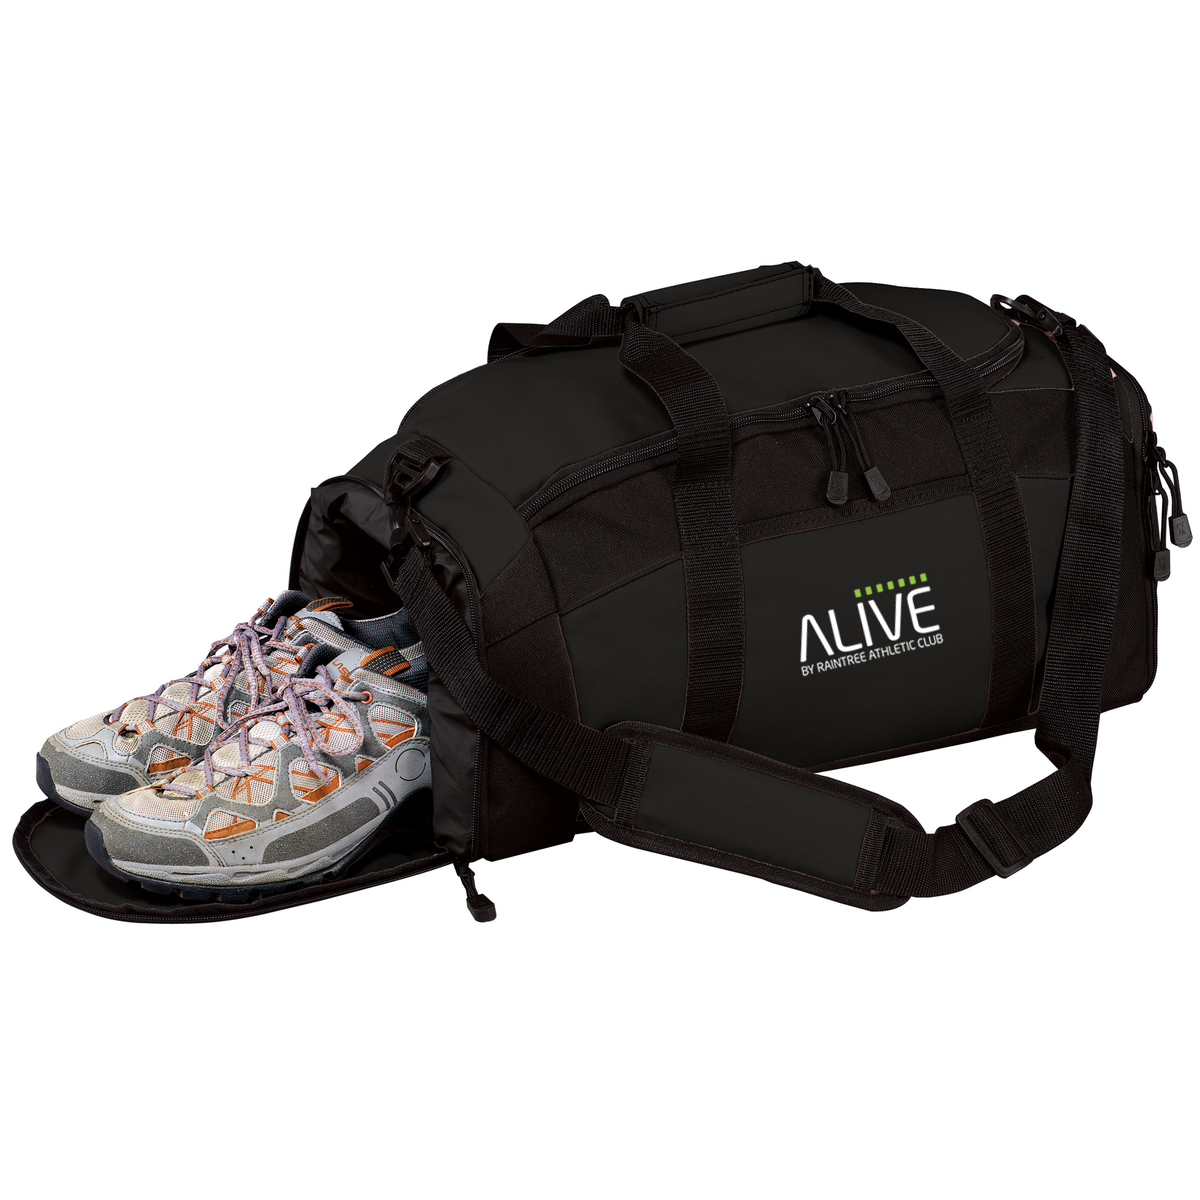 Alive Gym Bag